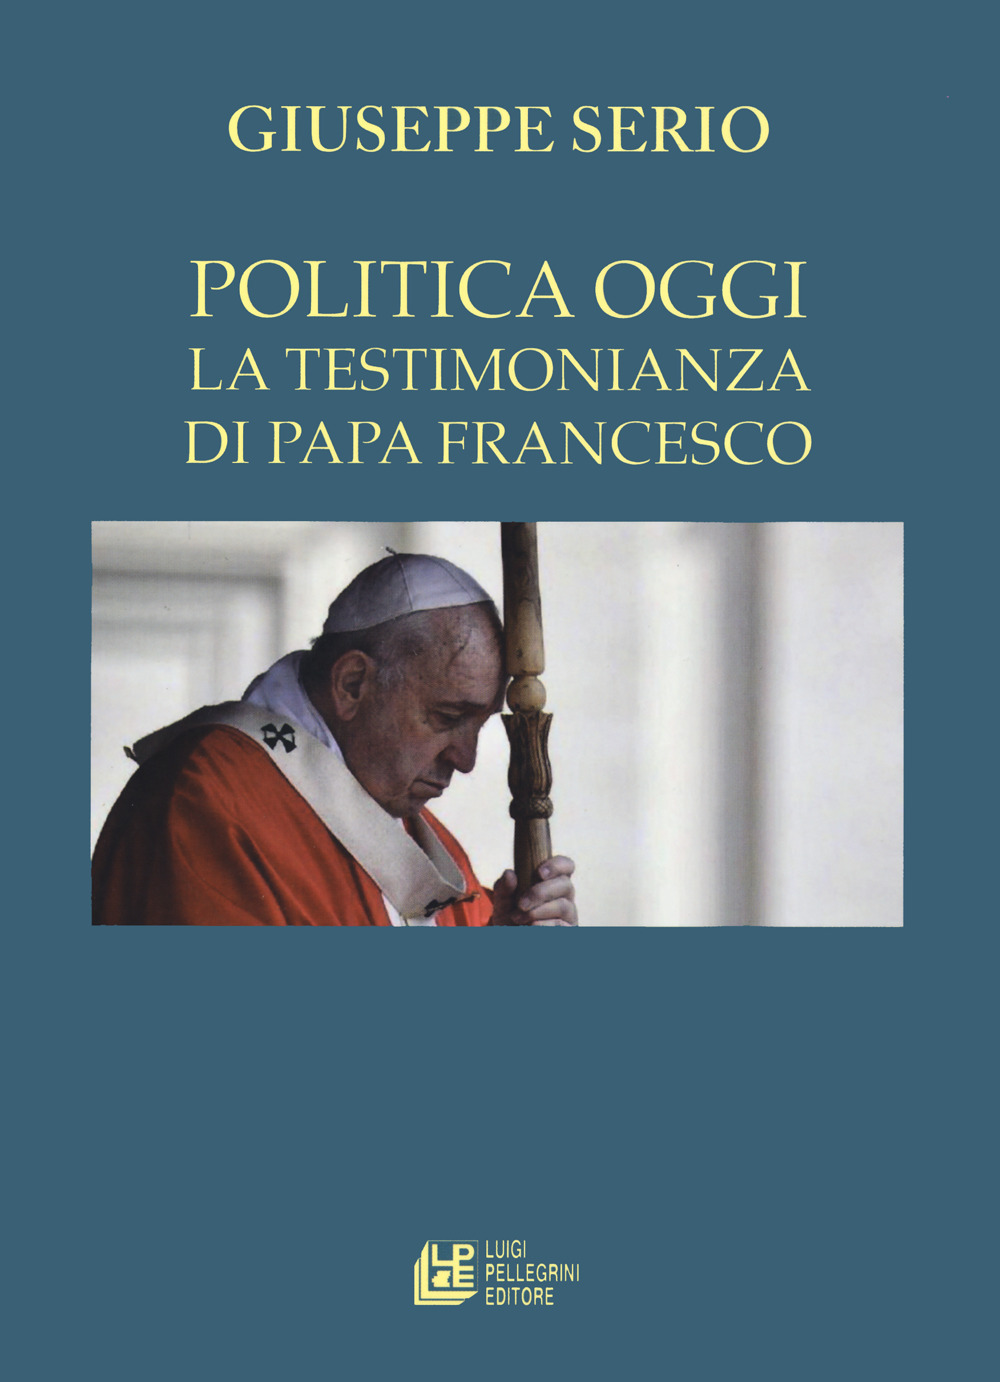 La politica oggi. La testimonianza di Papa Francesco